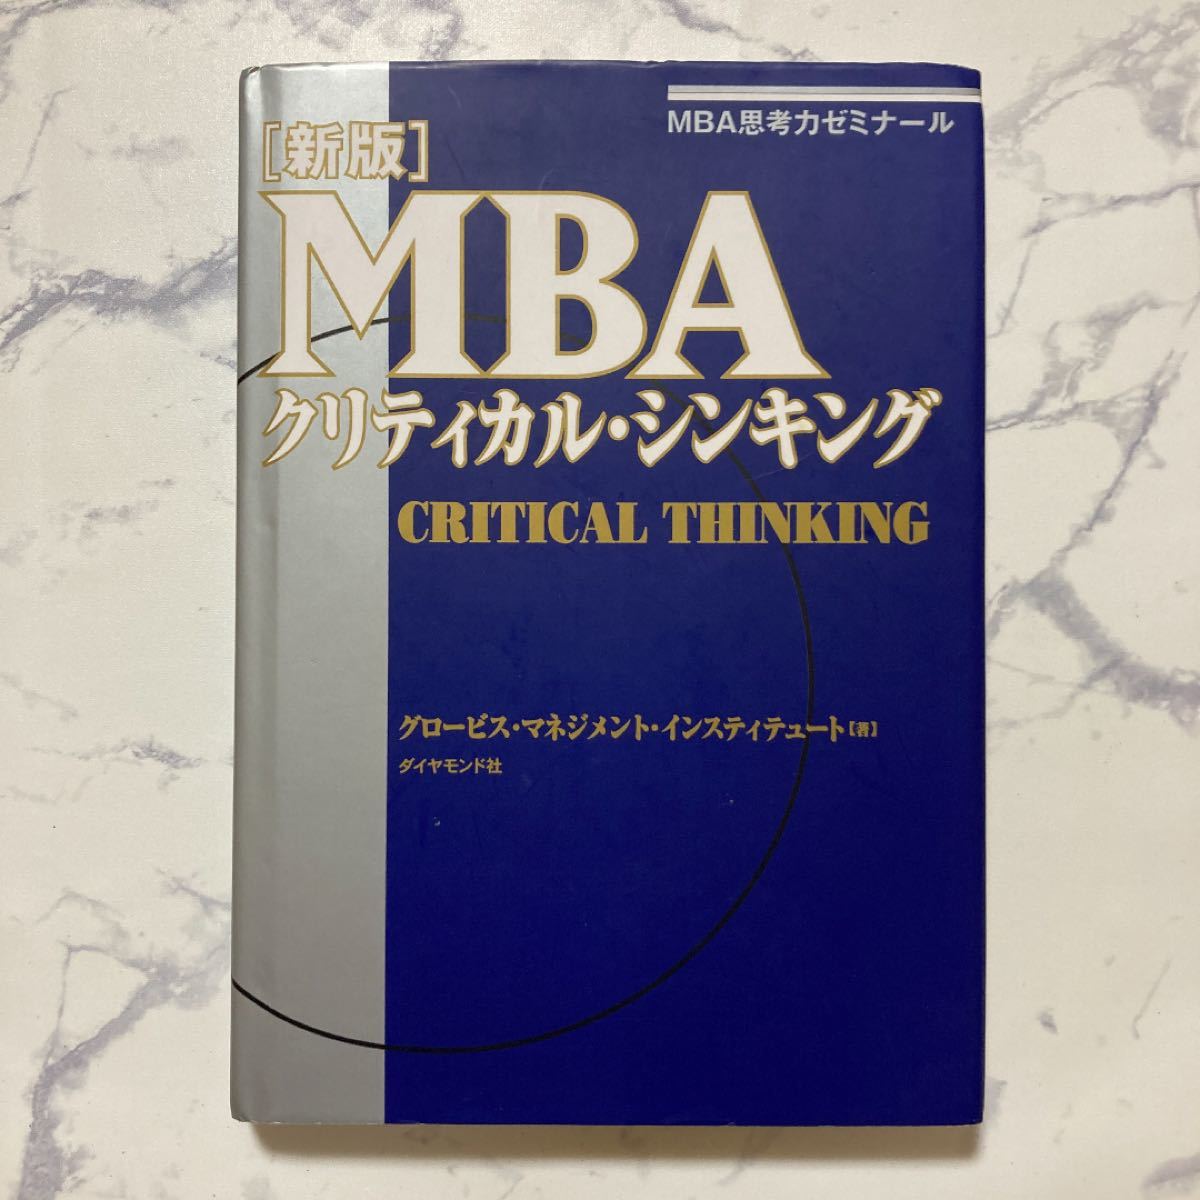 MBAクリティカル・シンキング : MBA思考力ゼミナール